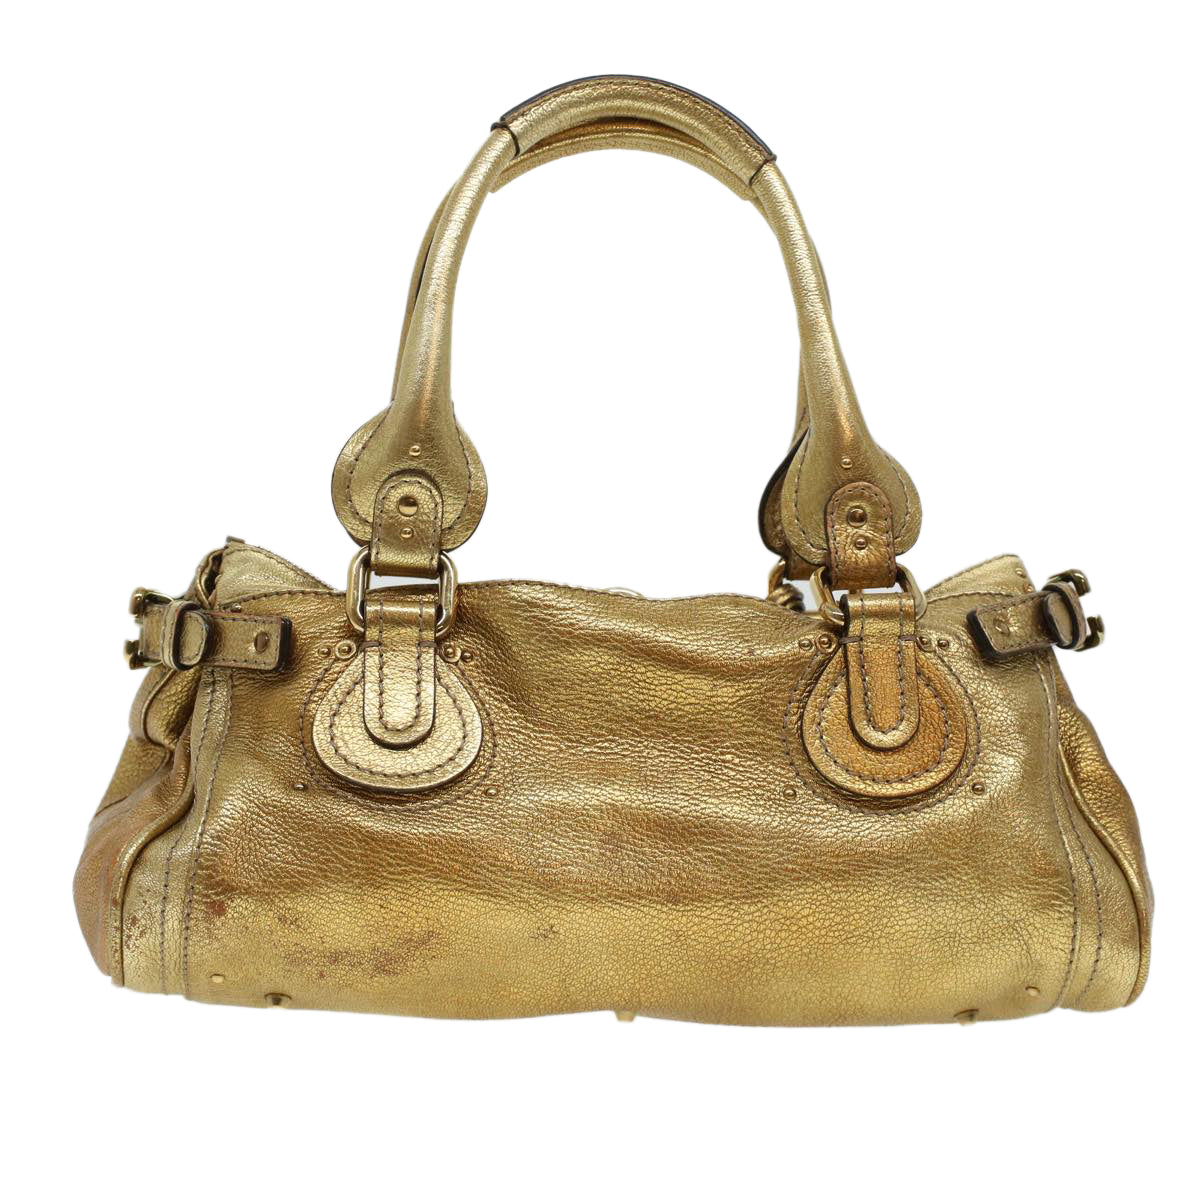 Chloe Paddington Hand Bag Leather Gold 03-09-51-5811 Auth bs5464 - 0